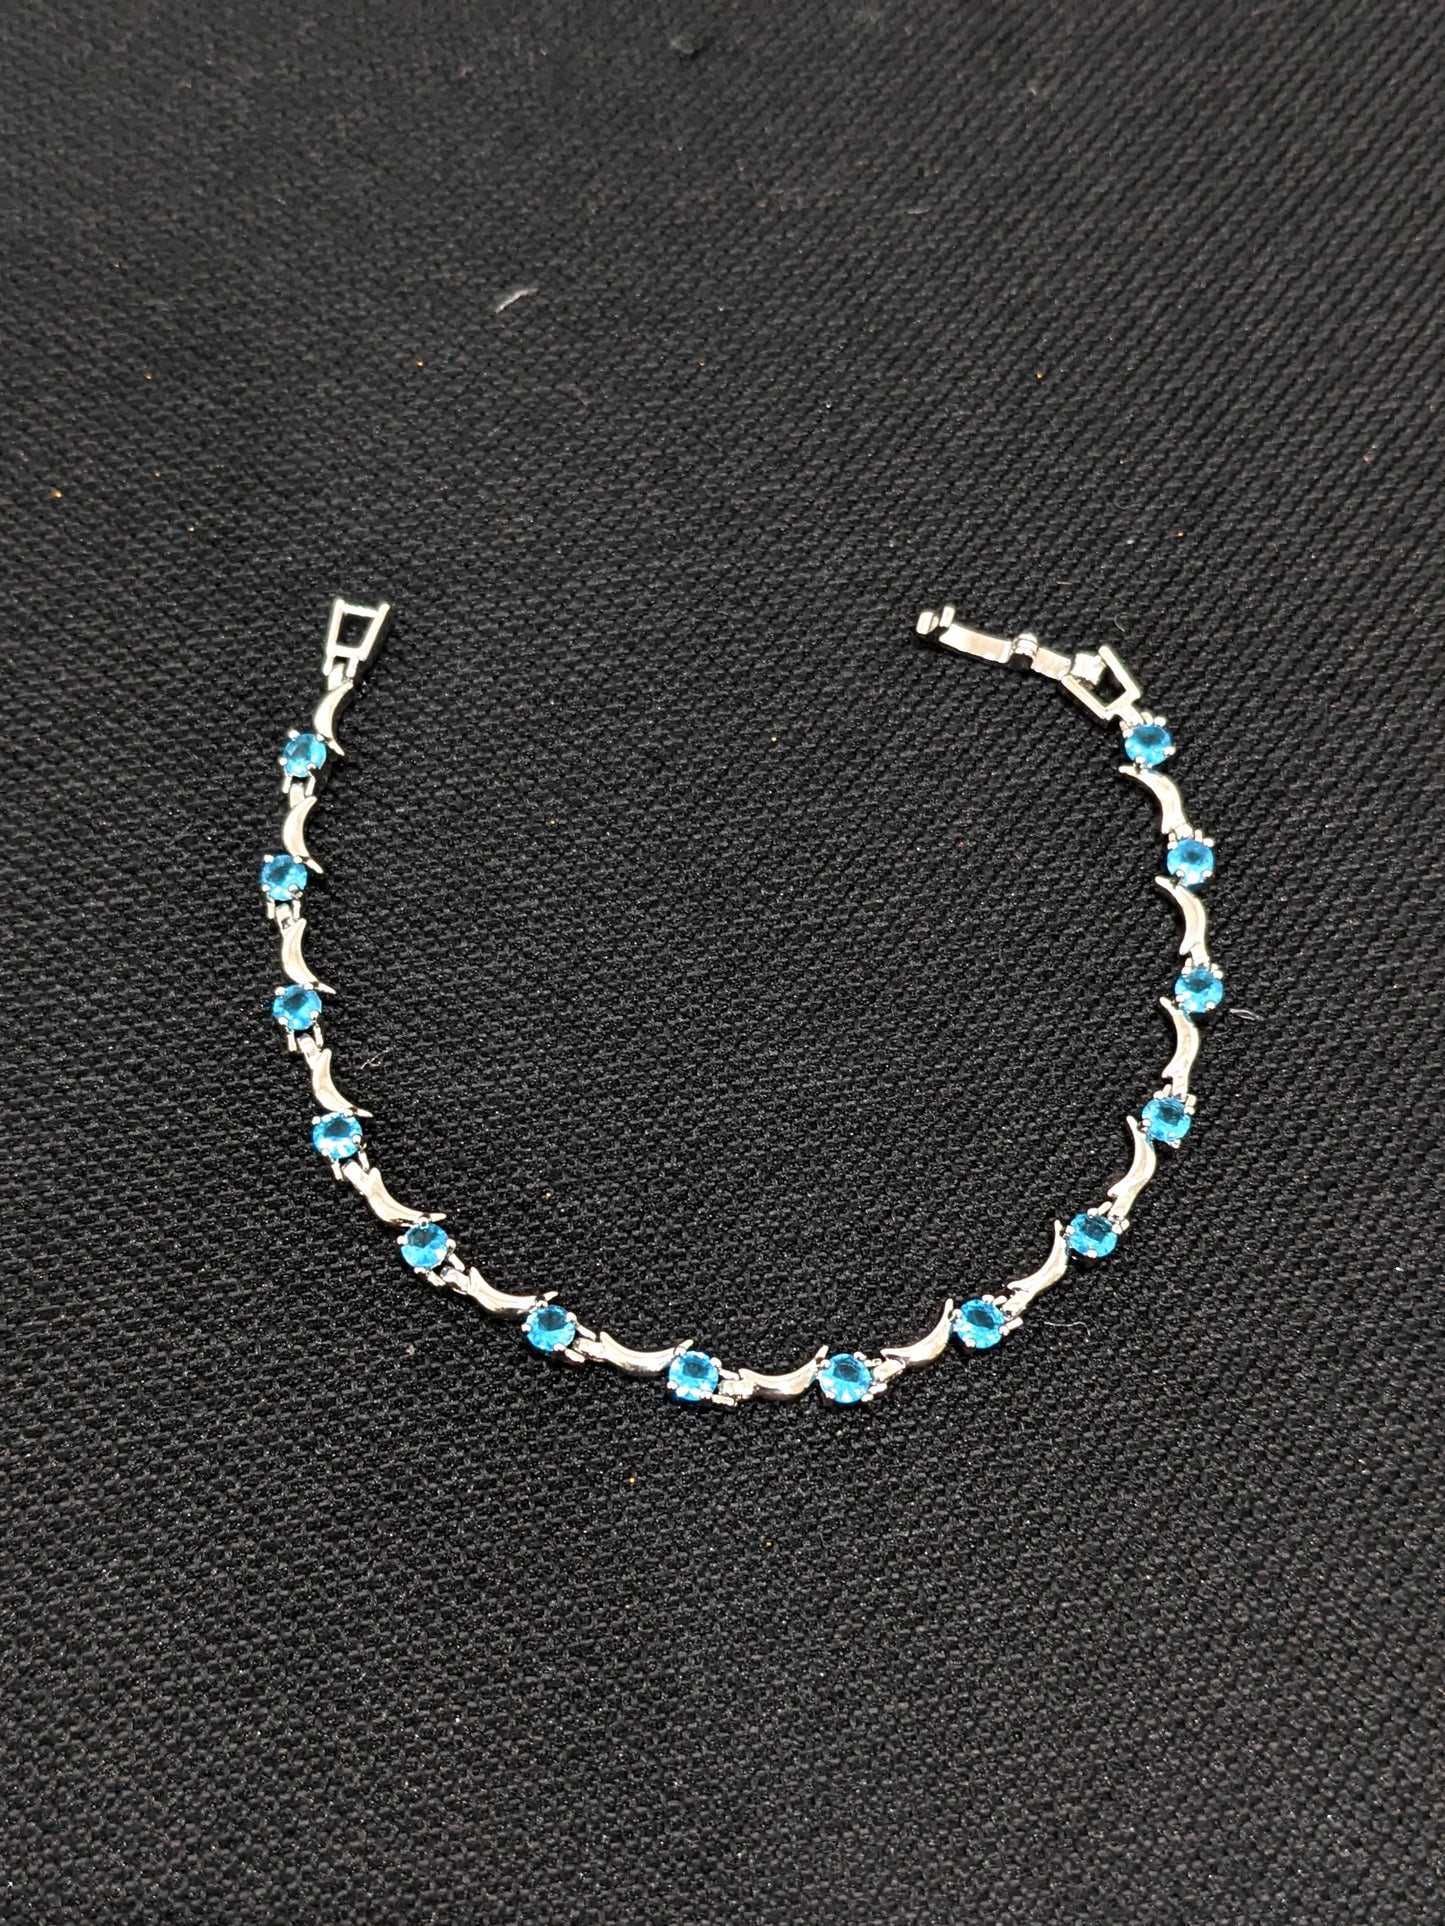 Crescent design sky blue CZ stone Bracelet - Simpliful